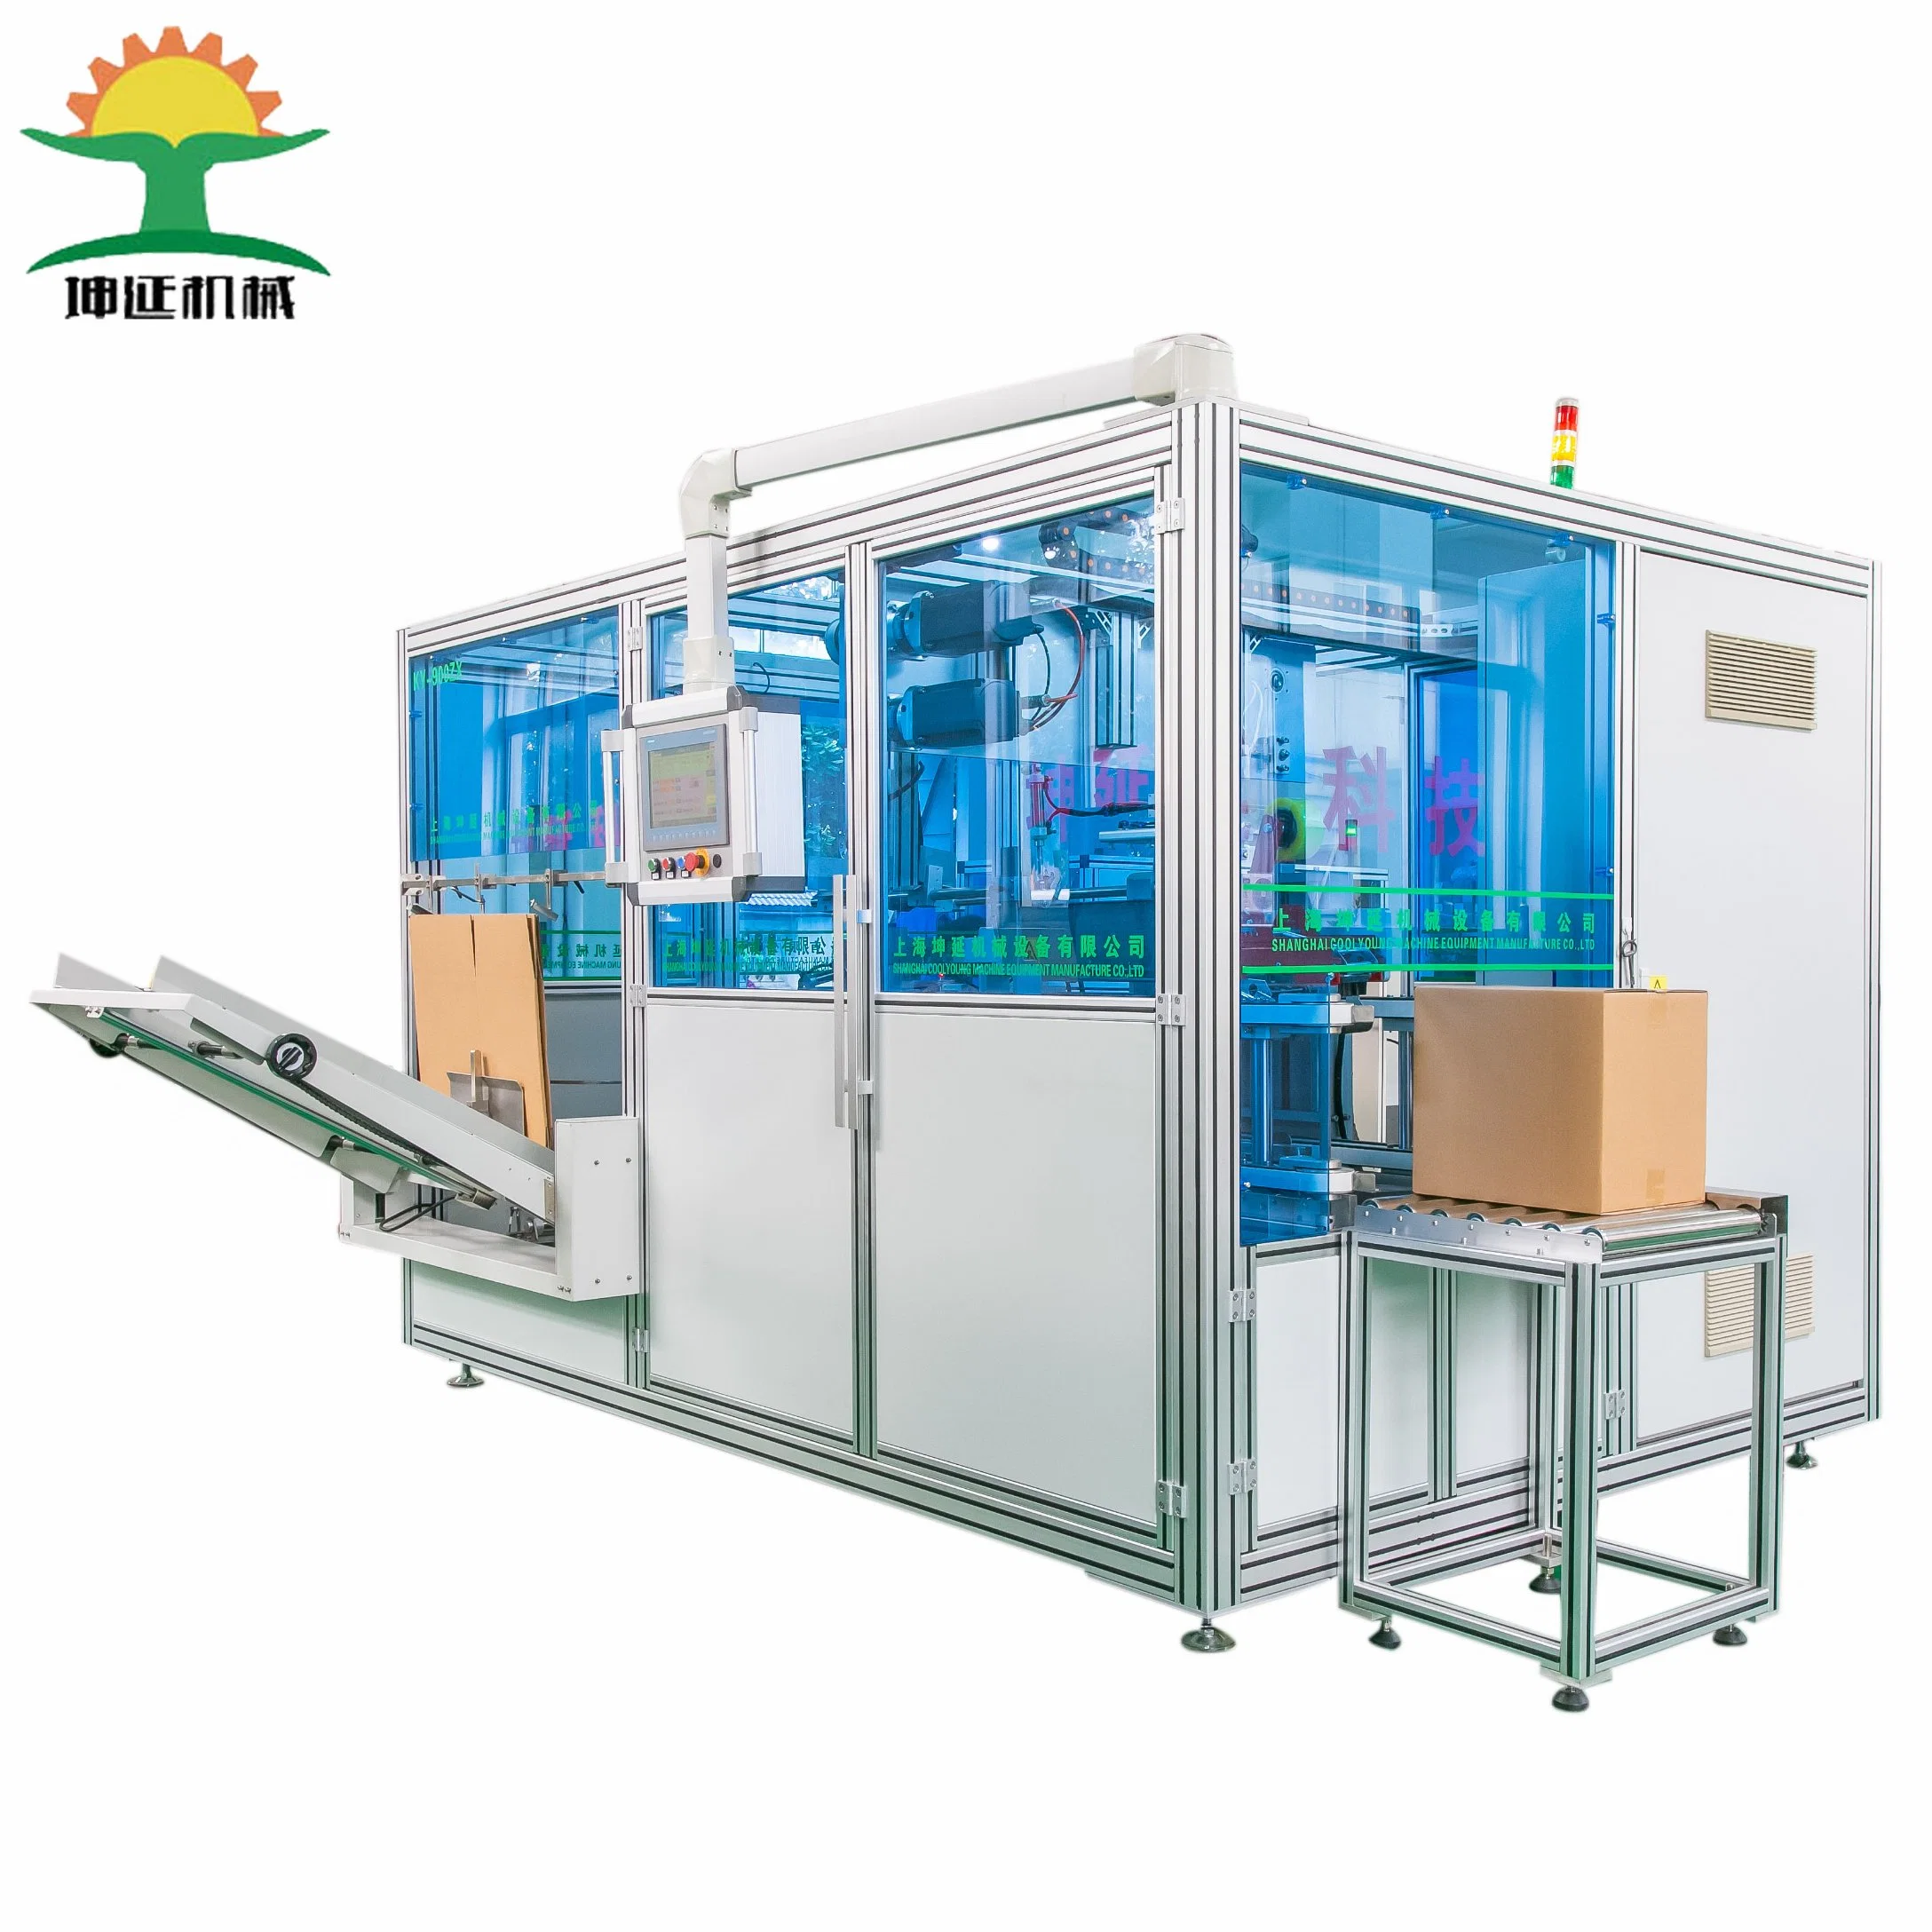 Aplicável automática de máquinas na fábrica da caixa de papelão da embalagem da caixa na horizontal e vertical Cartoning máquina de embalagem